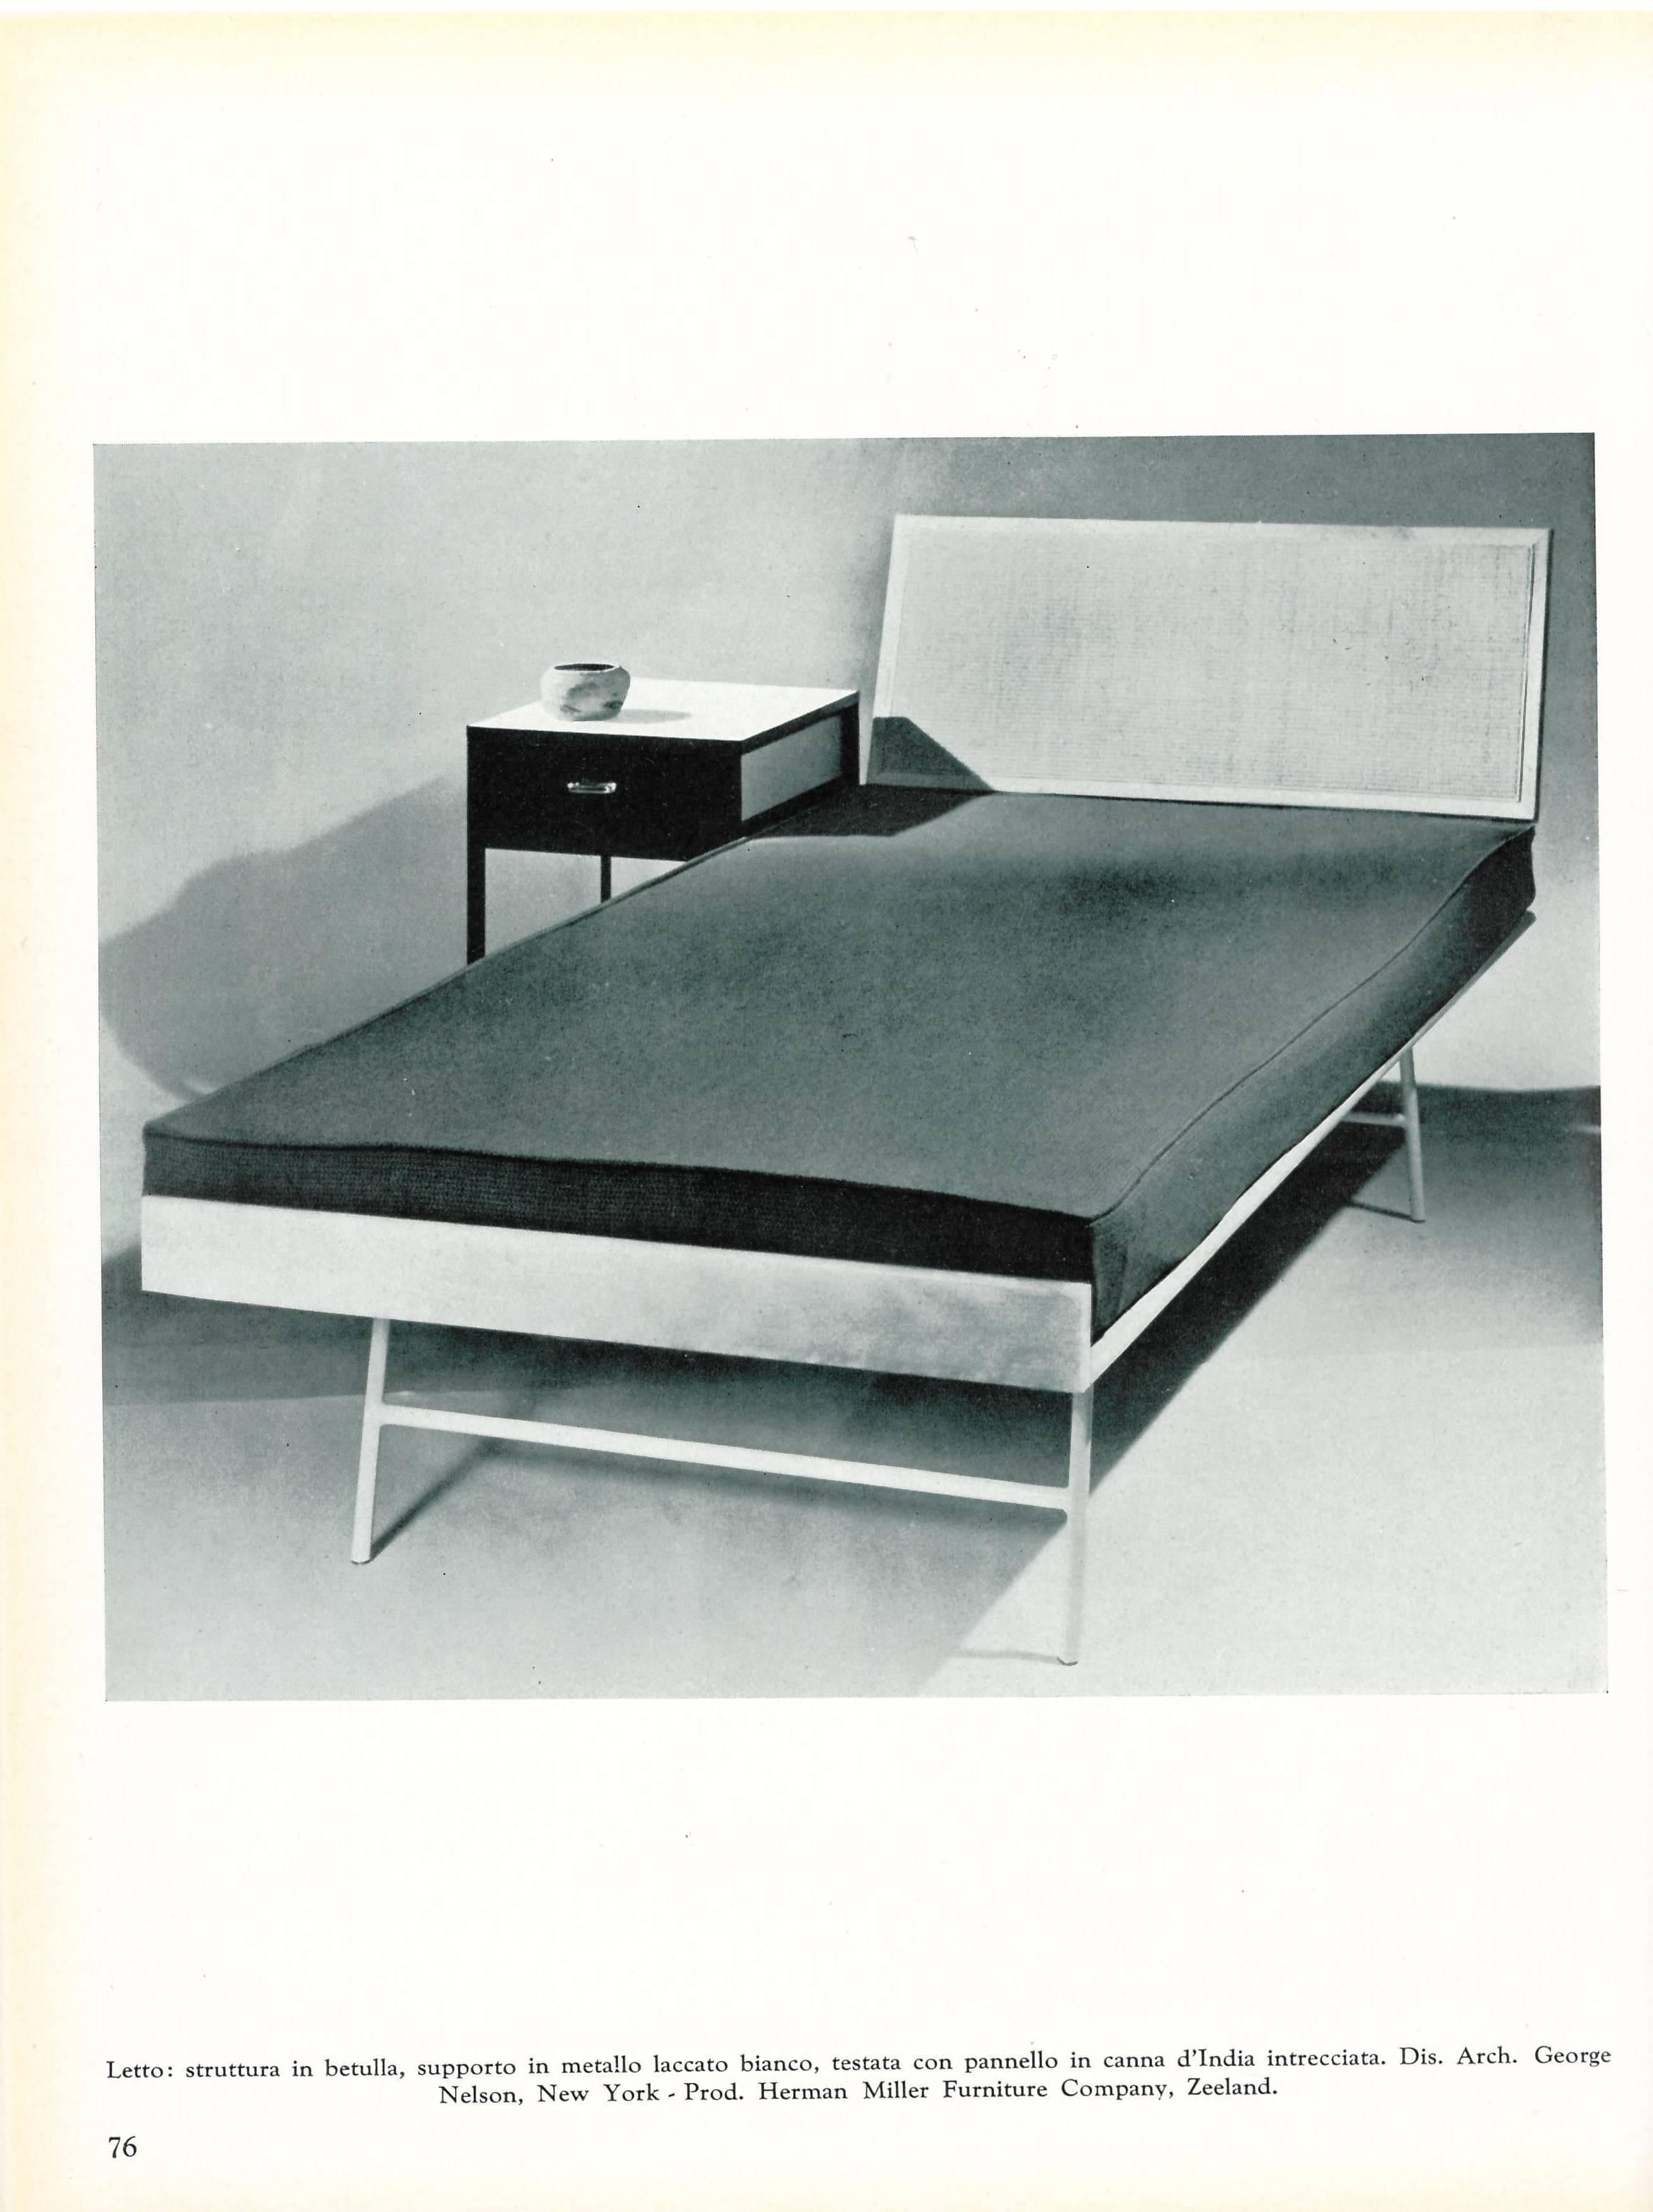 Un livre cartonné publié en 1956 avec de nombreux exemples de meubles du milieu du siècle conçus et produits par certains des designers les plus célèbres de cette période. On y trouve des personnalités telles que Gio Ponti, Herman Miller, Finn Juhl,